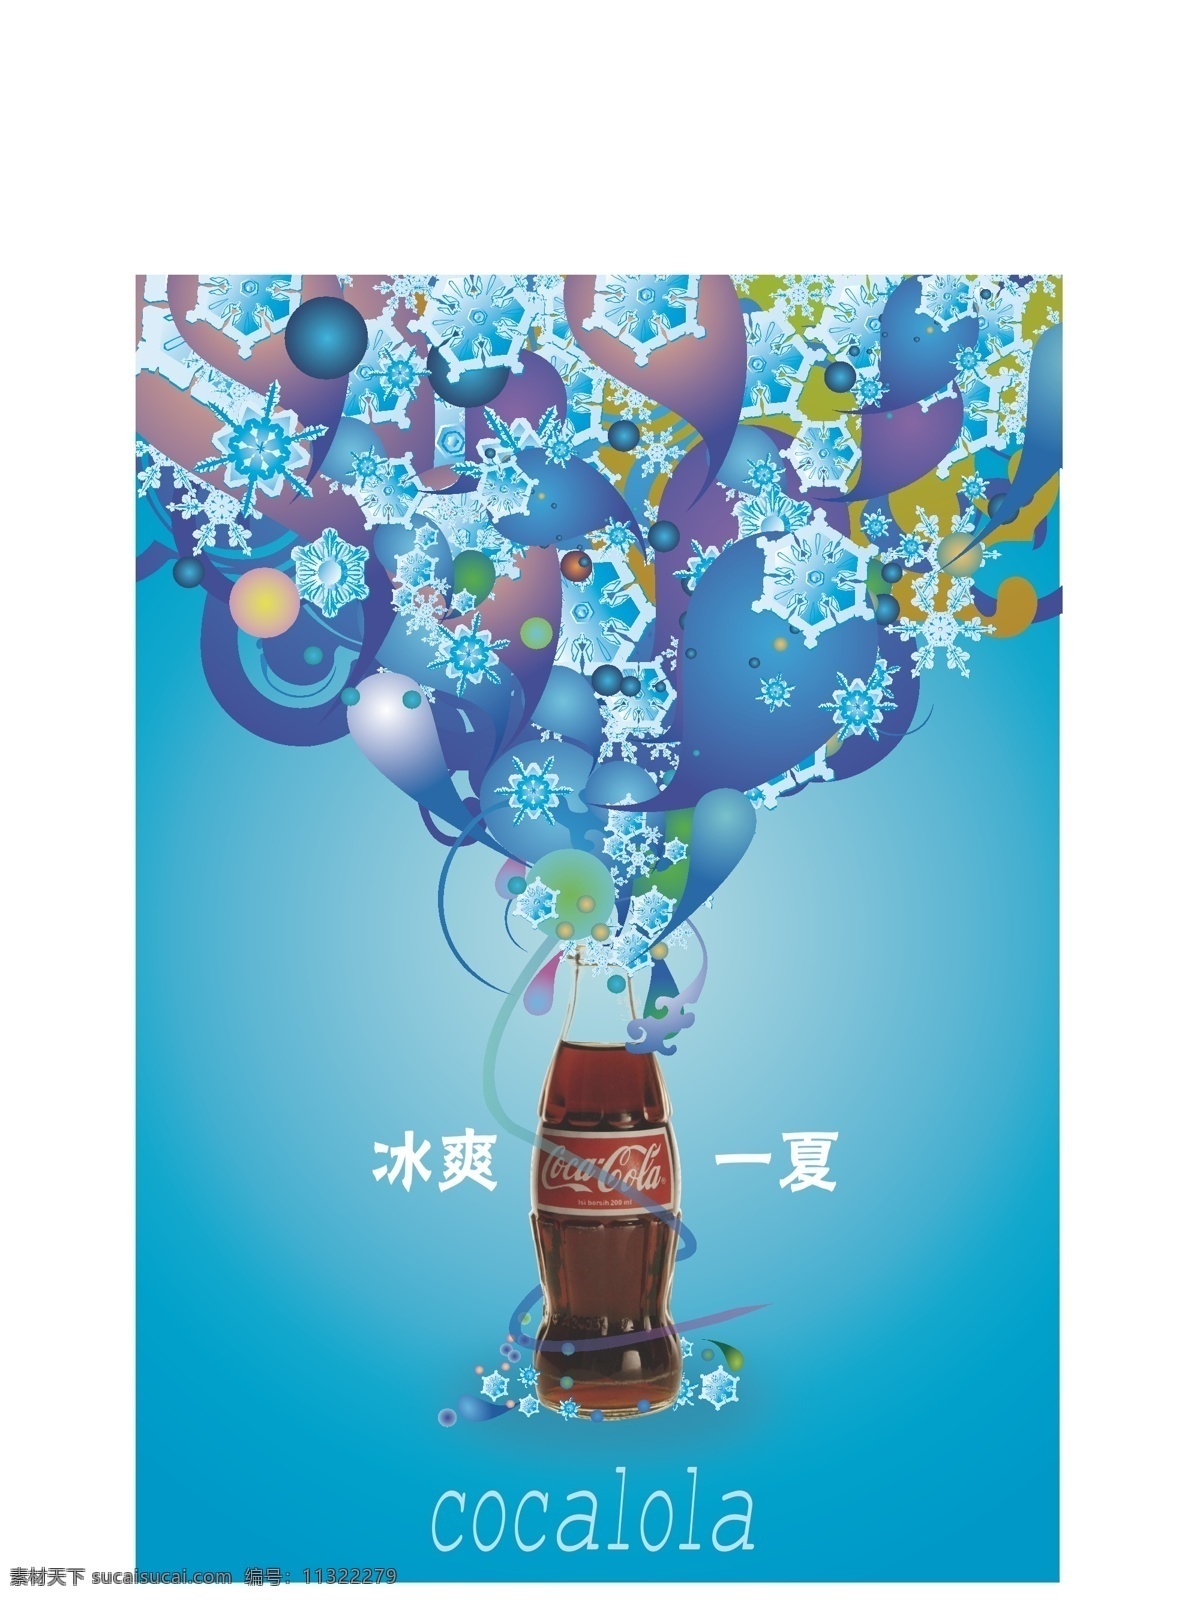 可乐 可口可乐 汽水 广告 庆祝 冰 雪花 饮料 矢量